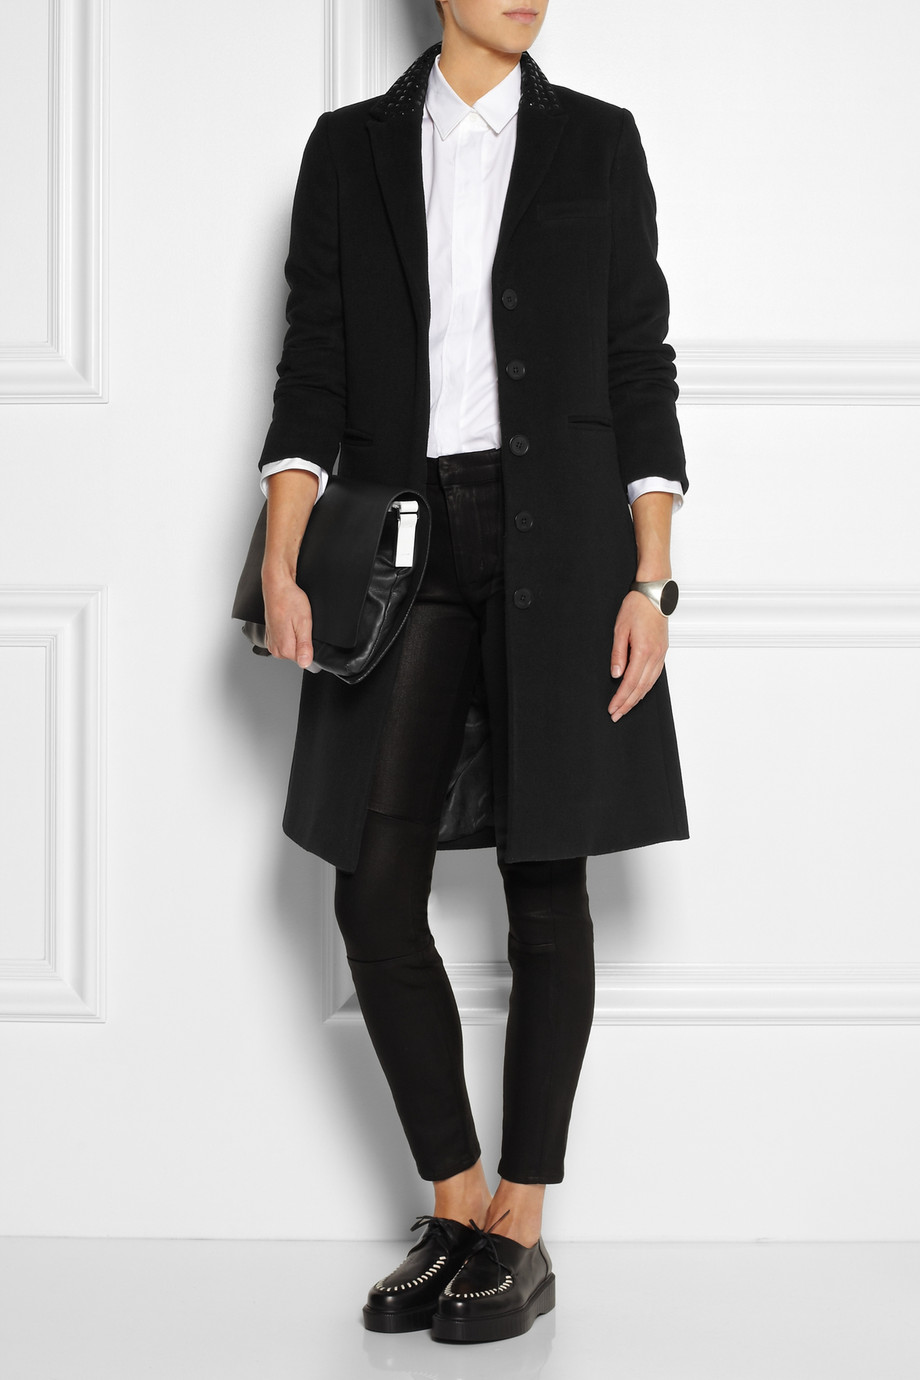 Lyst - Karl lagerfeld Odera Studded Wool-blend Felt Coat in Black